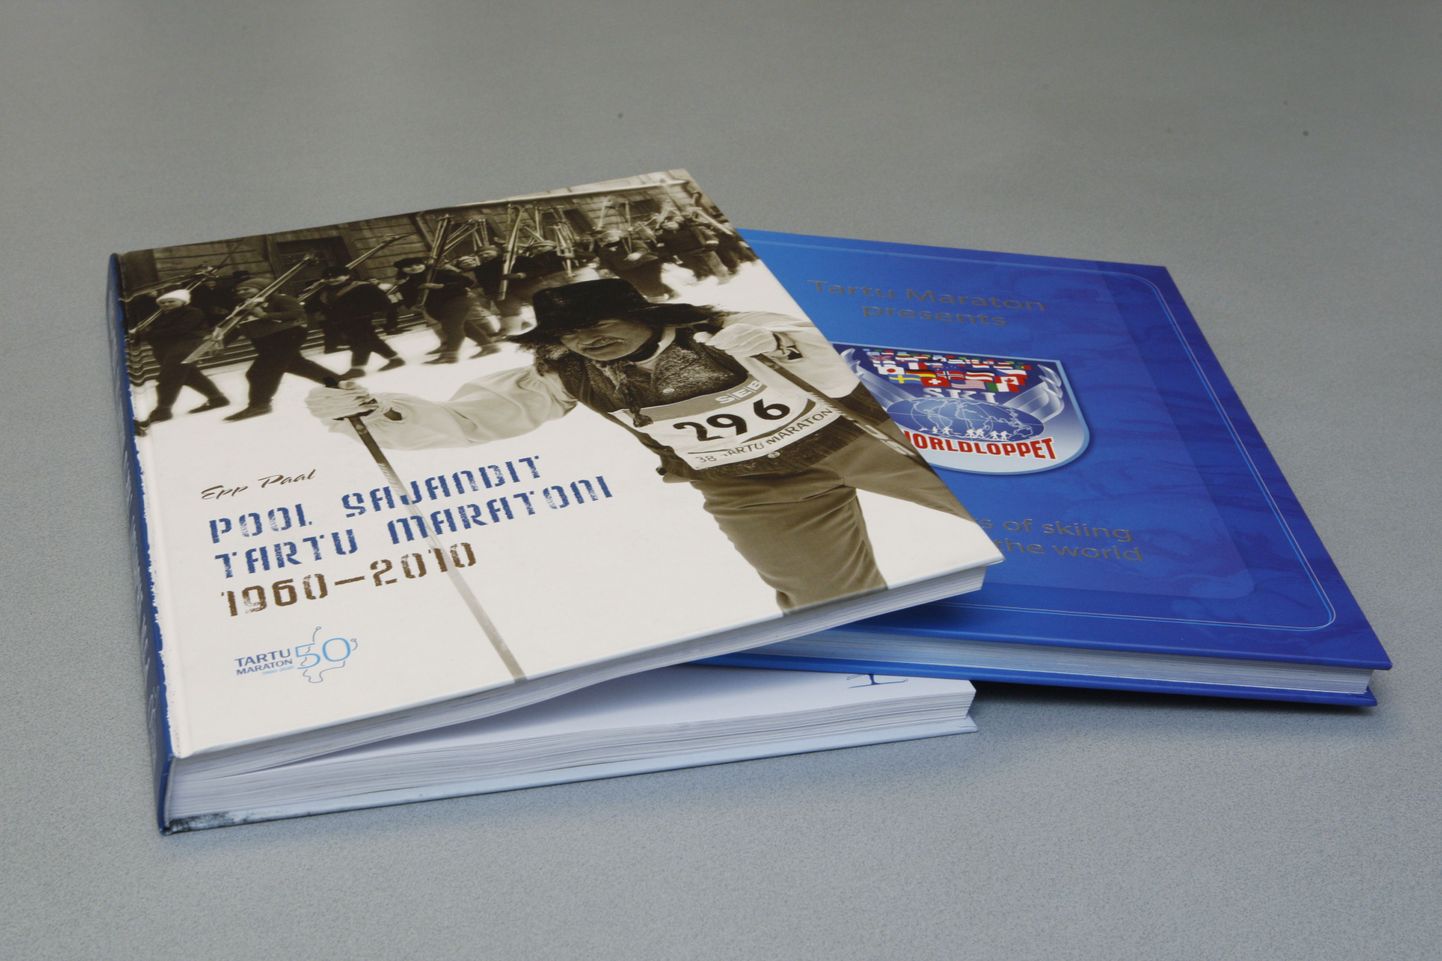 Klubi Tartu Maraton kingib kõikidele Eesti koolidele raamatud "30 years of skiing arond the world" ja "Pool sajandit Tartu Maratoni 1960-2010".